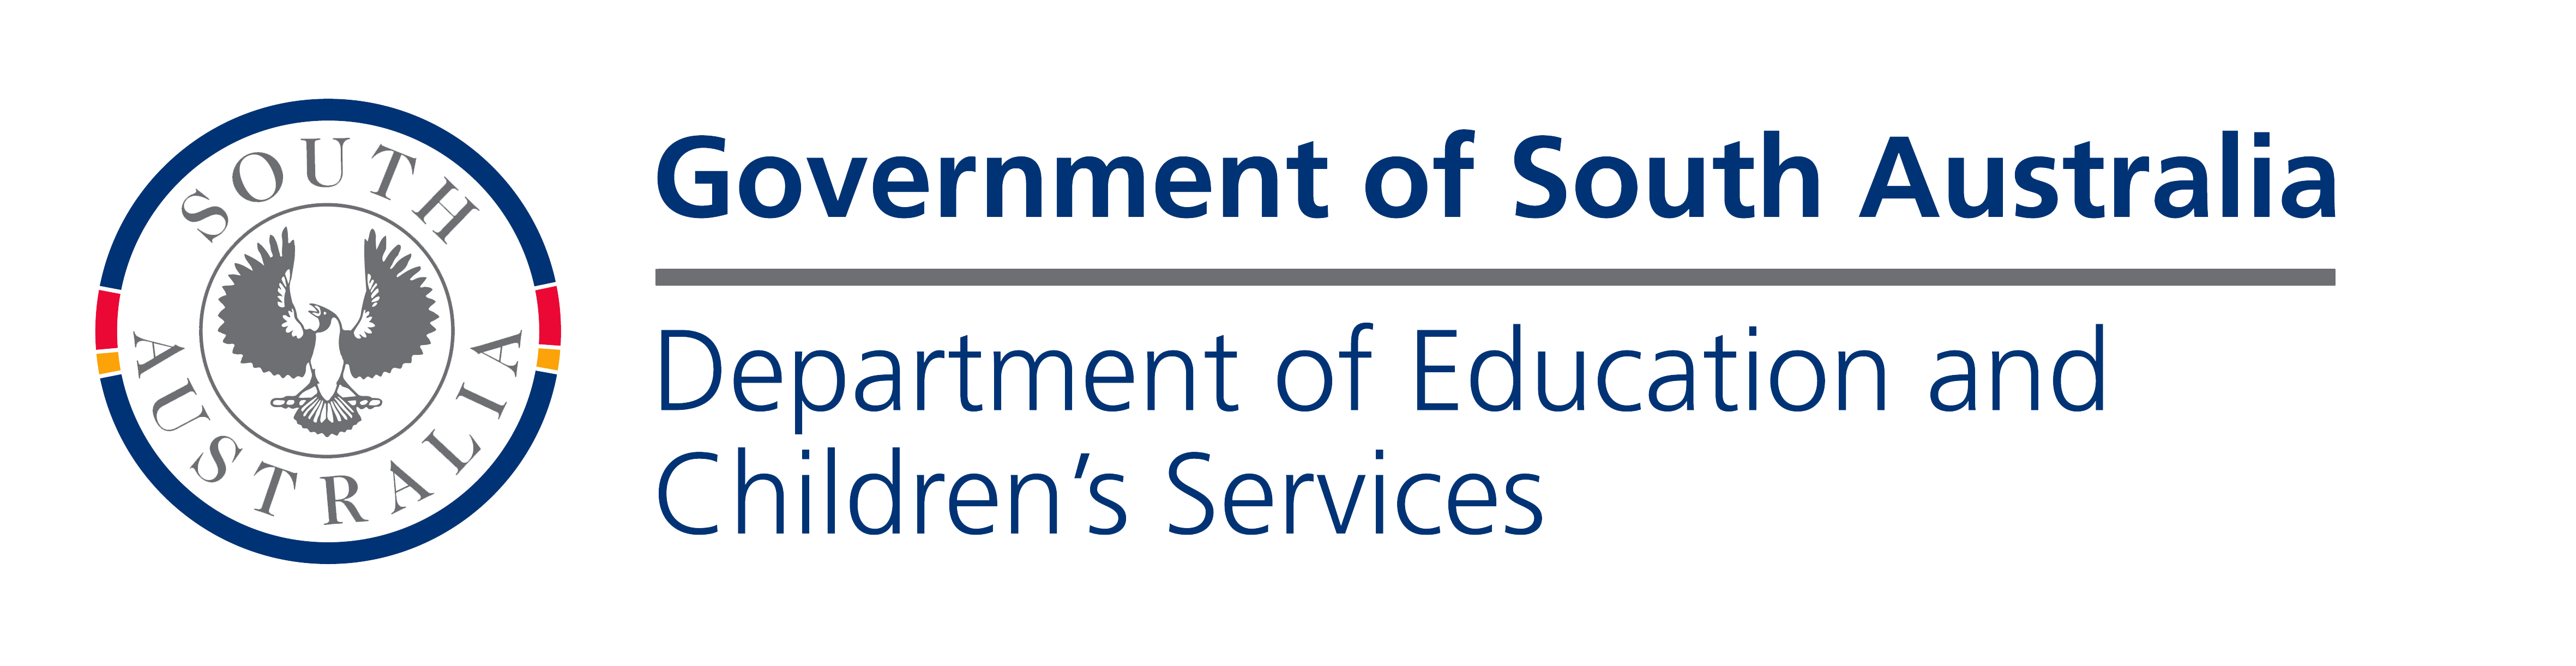 SG - Clients - Facilitation Dept of Education & Children's Services AUS - 16 Aug 2015